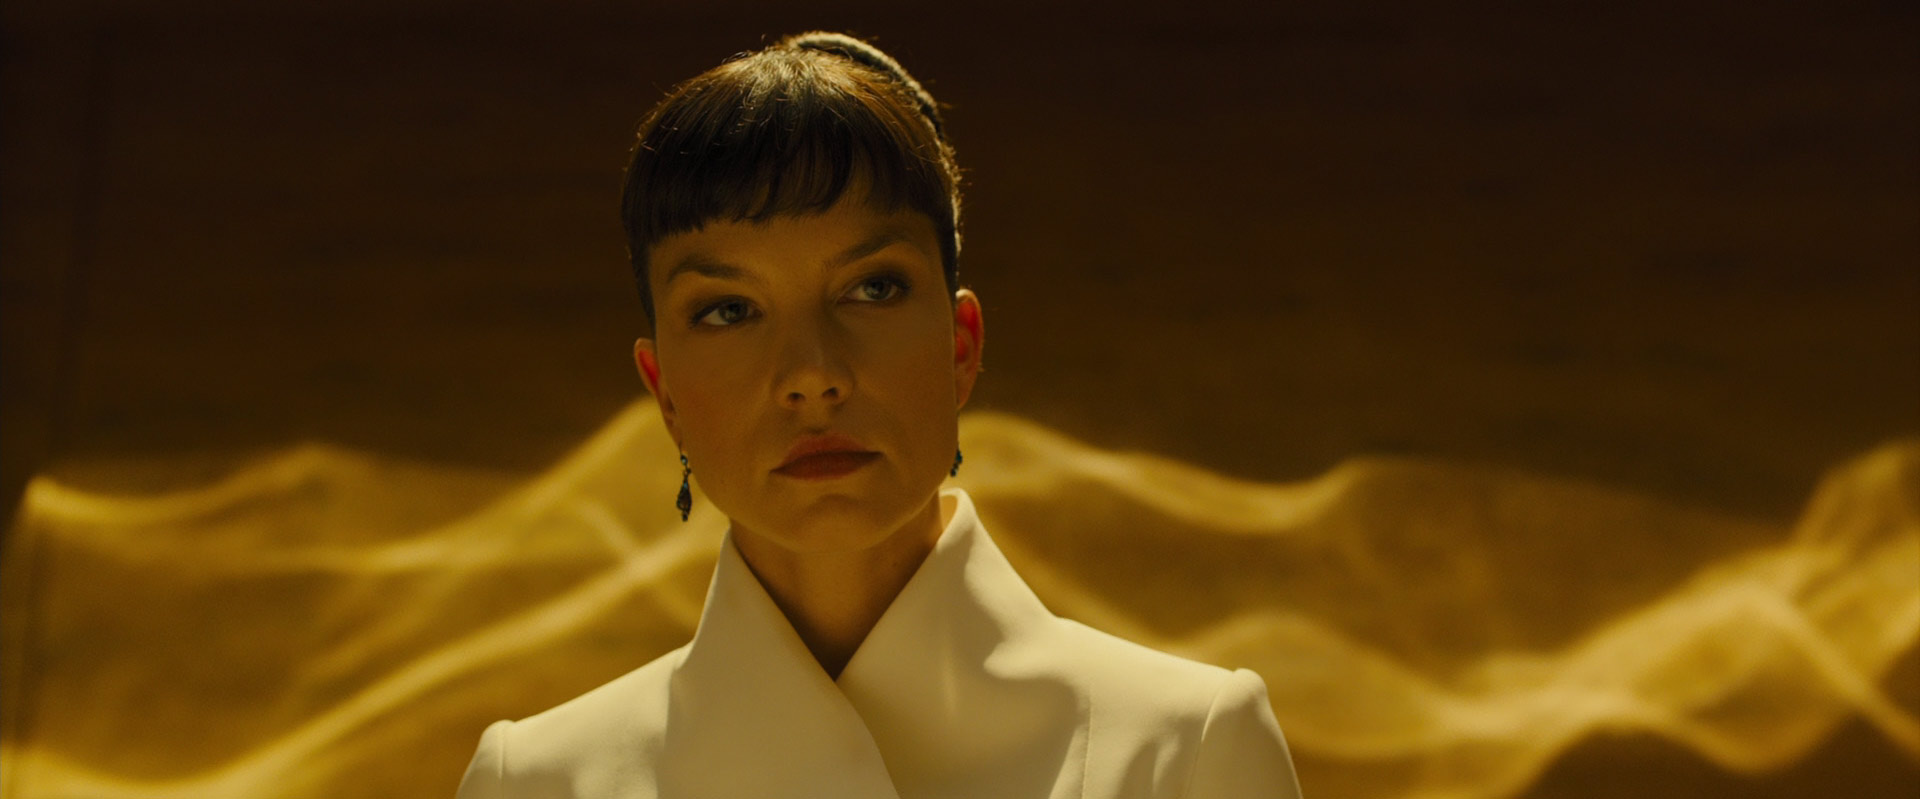 Sylvia Hoeks In Blade Runner 2049 Wallpapers